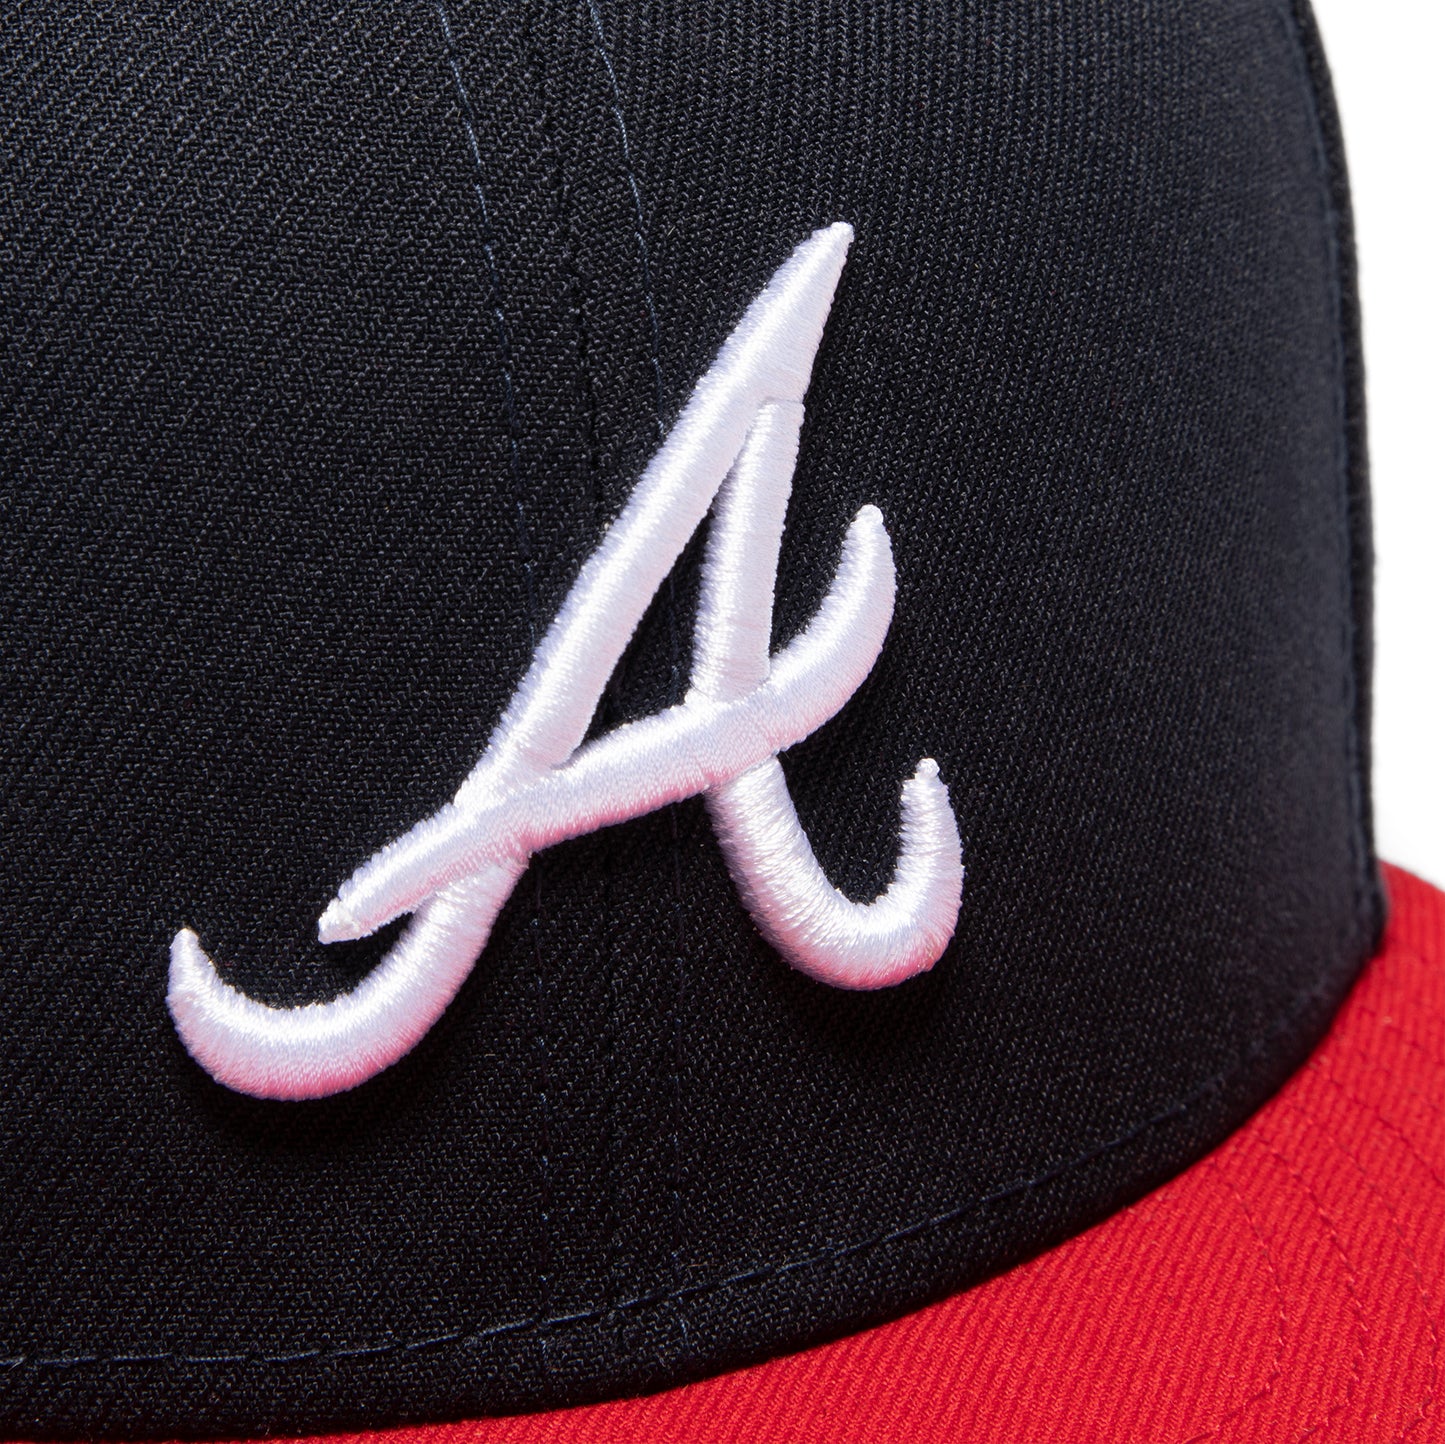 New Era MLB Atlanta Braves OTC 59FIFTY Fitted Hat (Navy/Red) 7 5/8